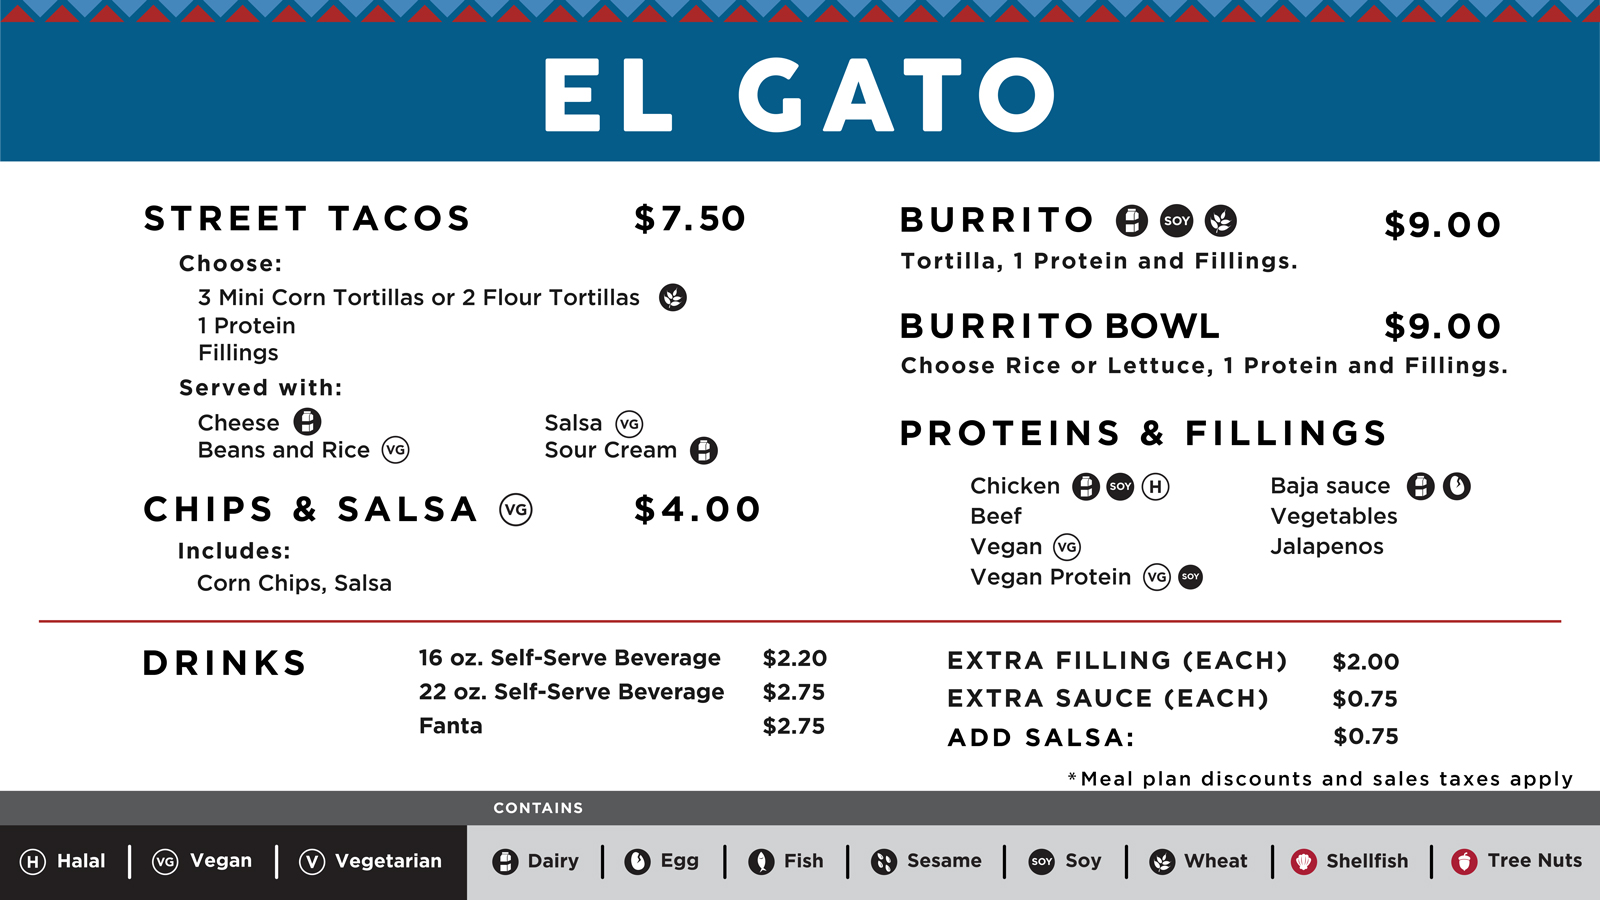 The main menu board for El Gato